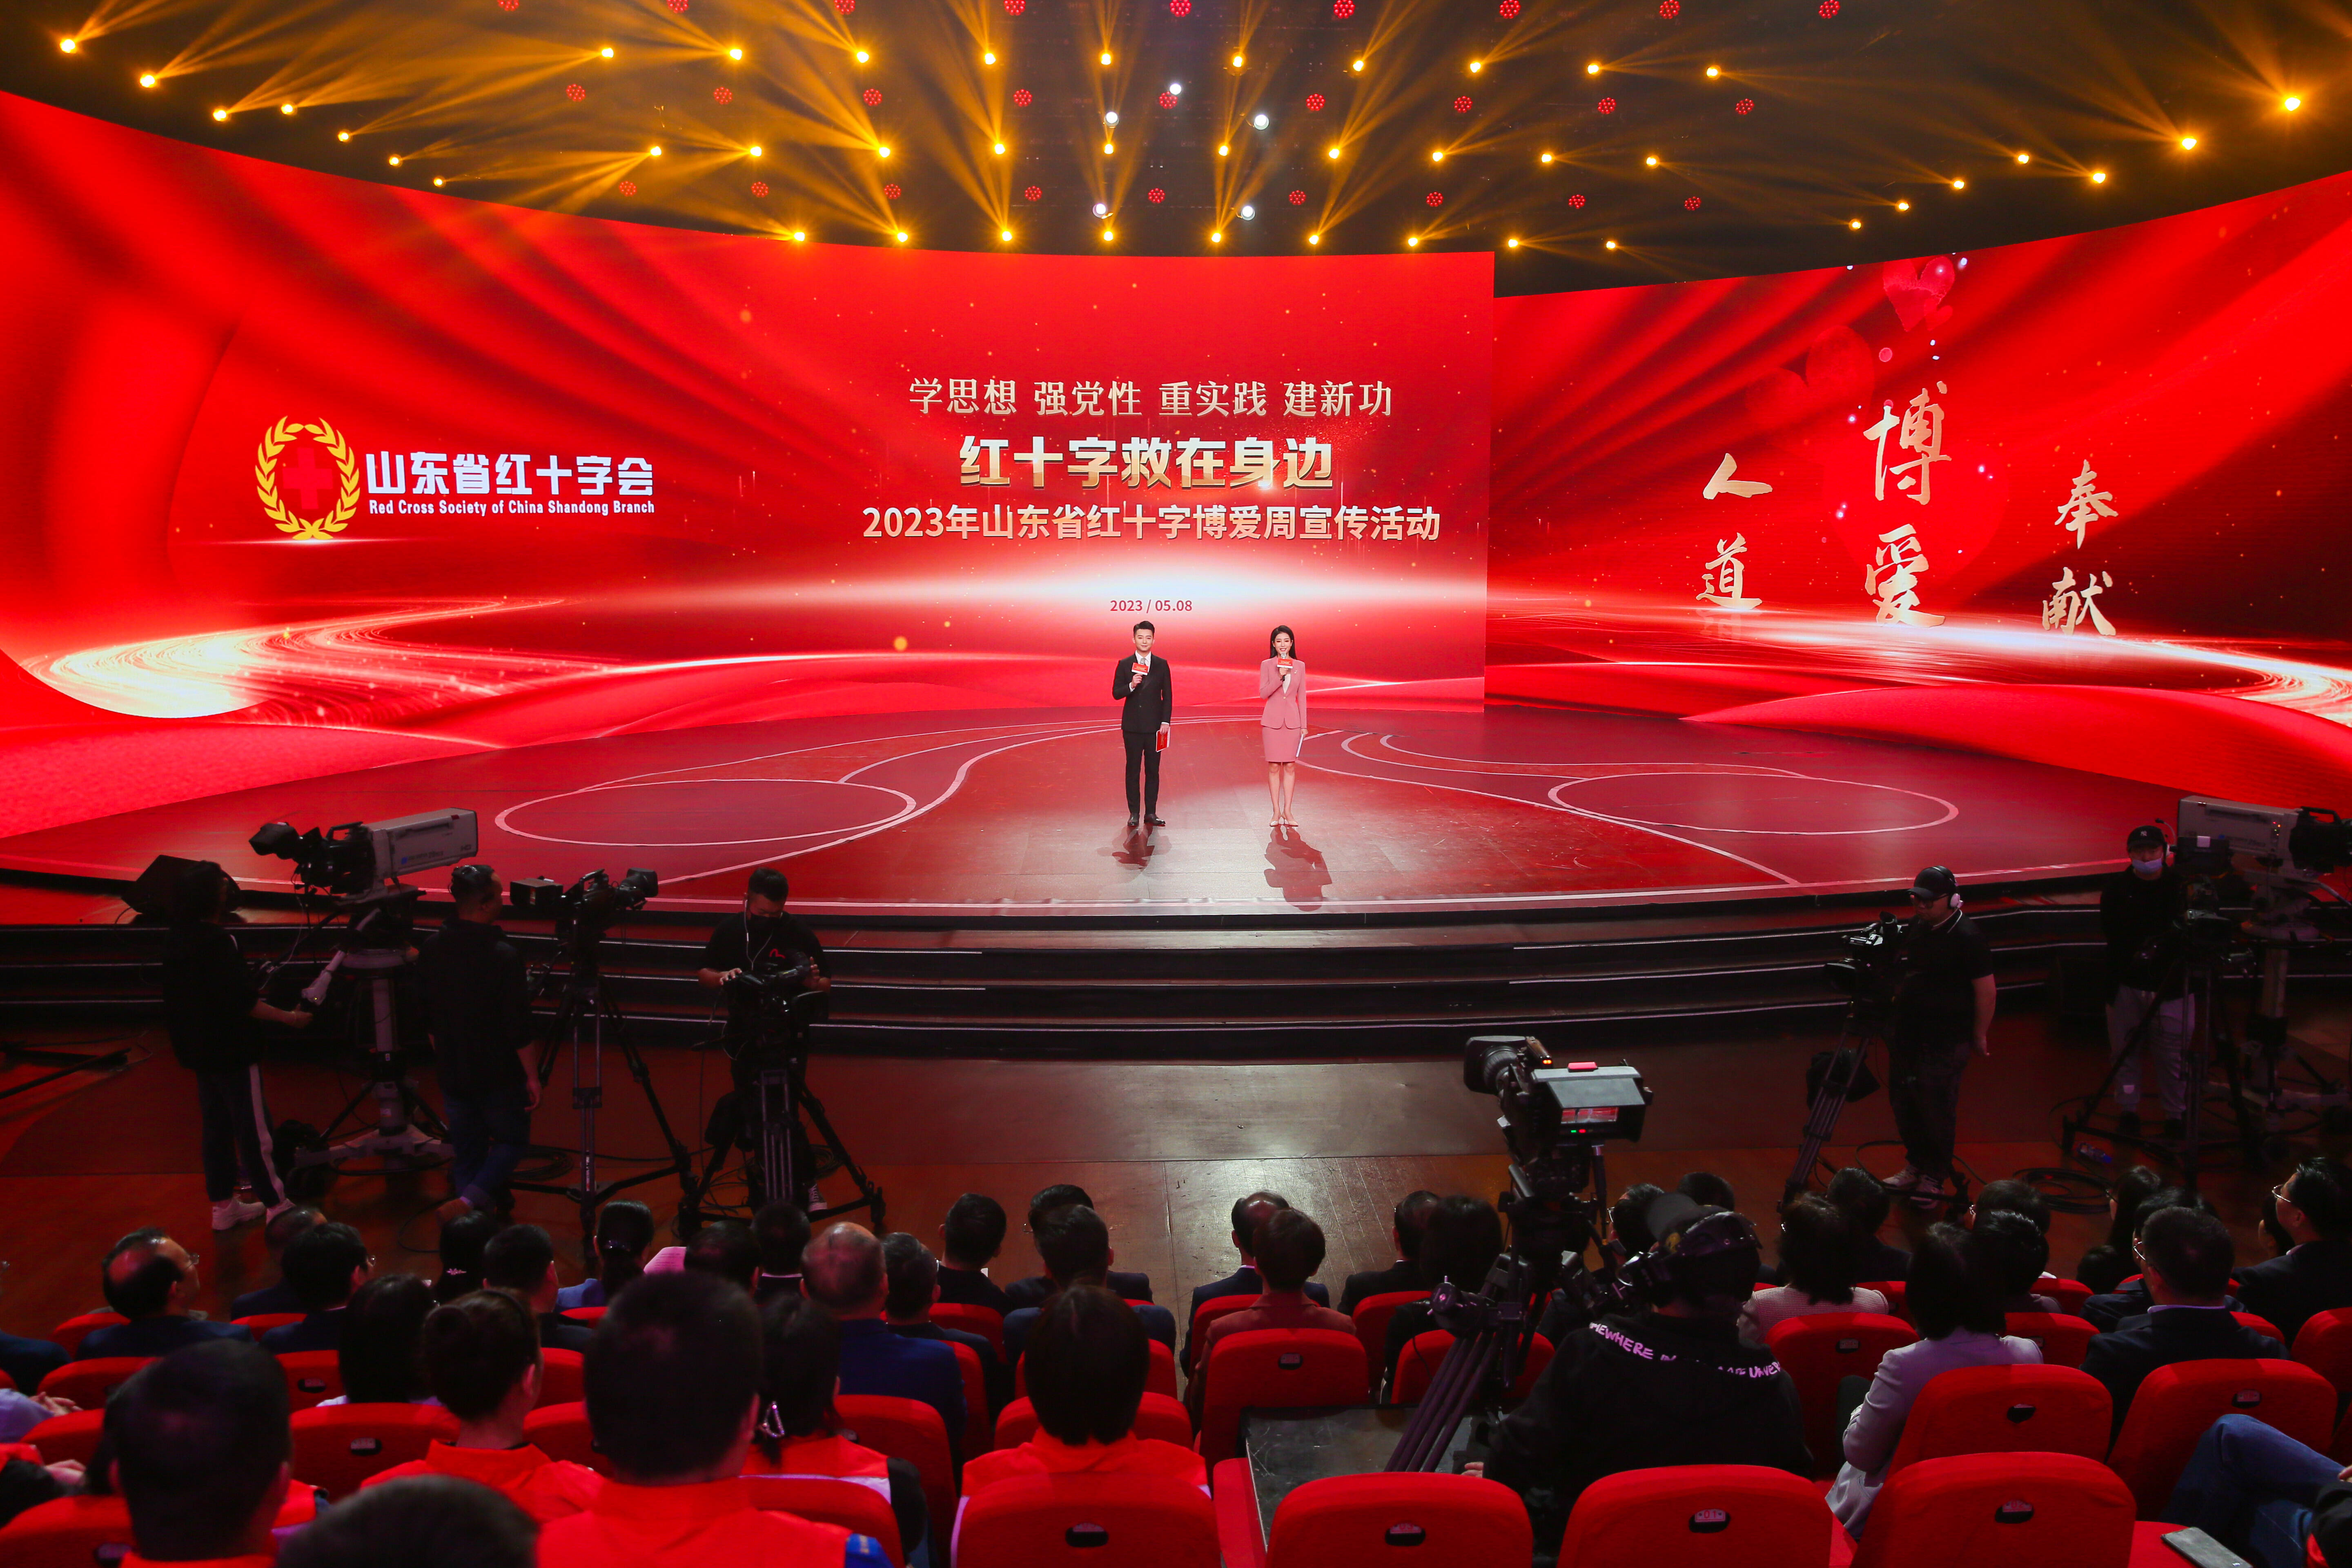 2023年山东省红十字博爱周宣传活动在济南举办